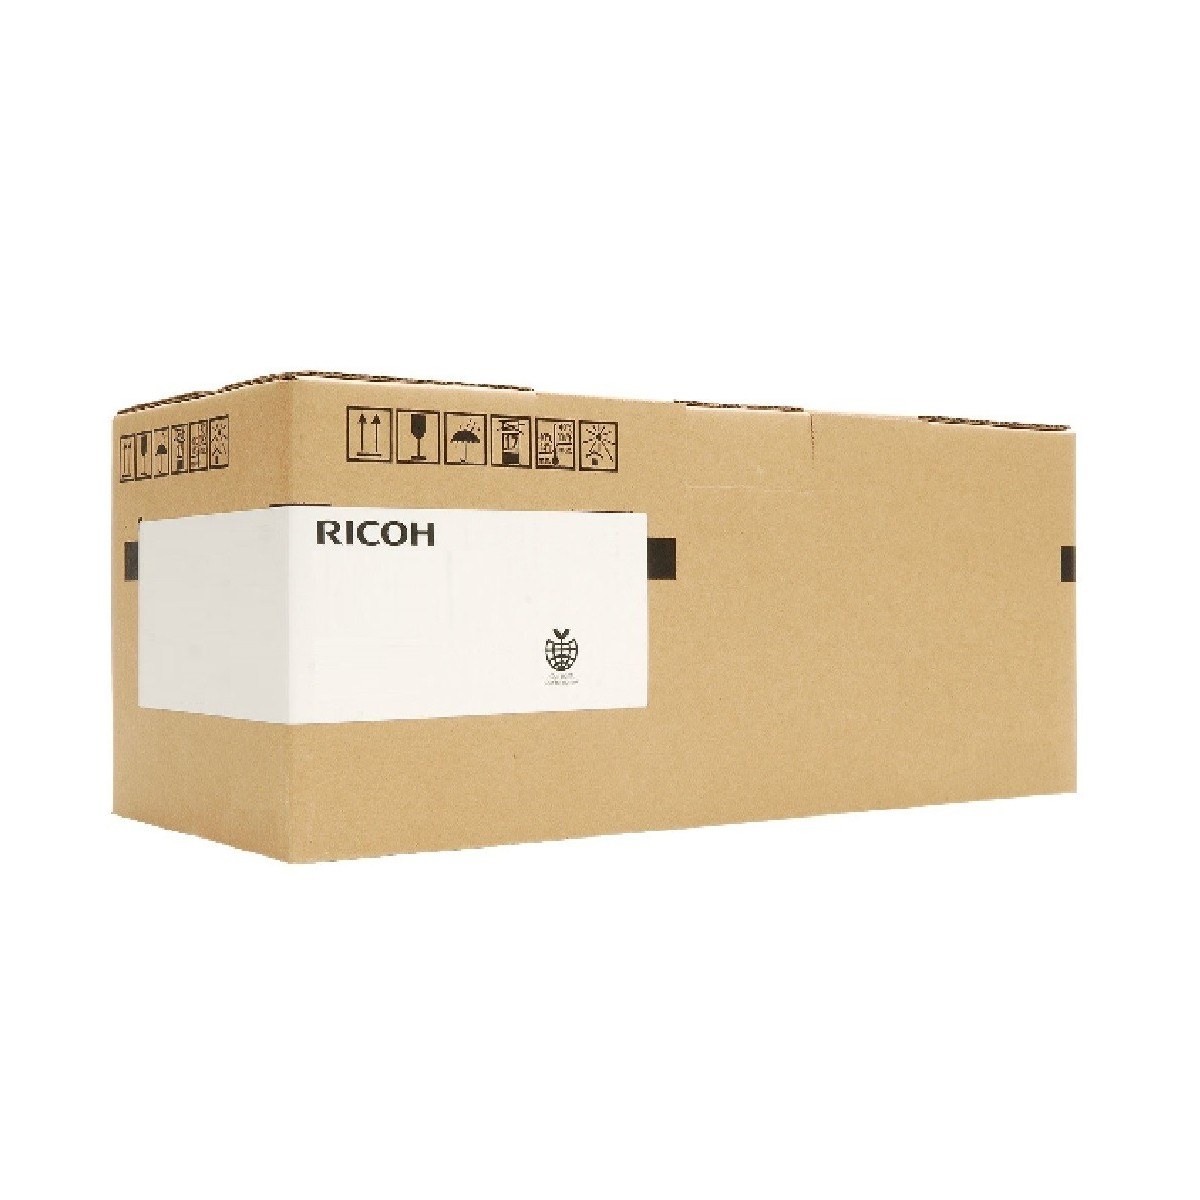 Ricoh B2912203 - Original - Ricoh - AFICIO MP 3500 - 1 pc(s) - 150000 pages - Black